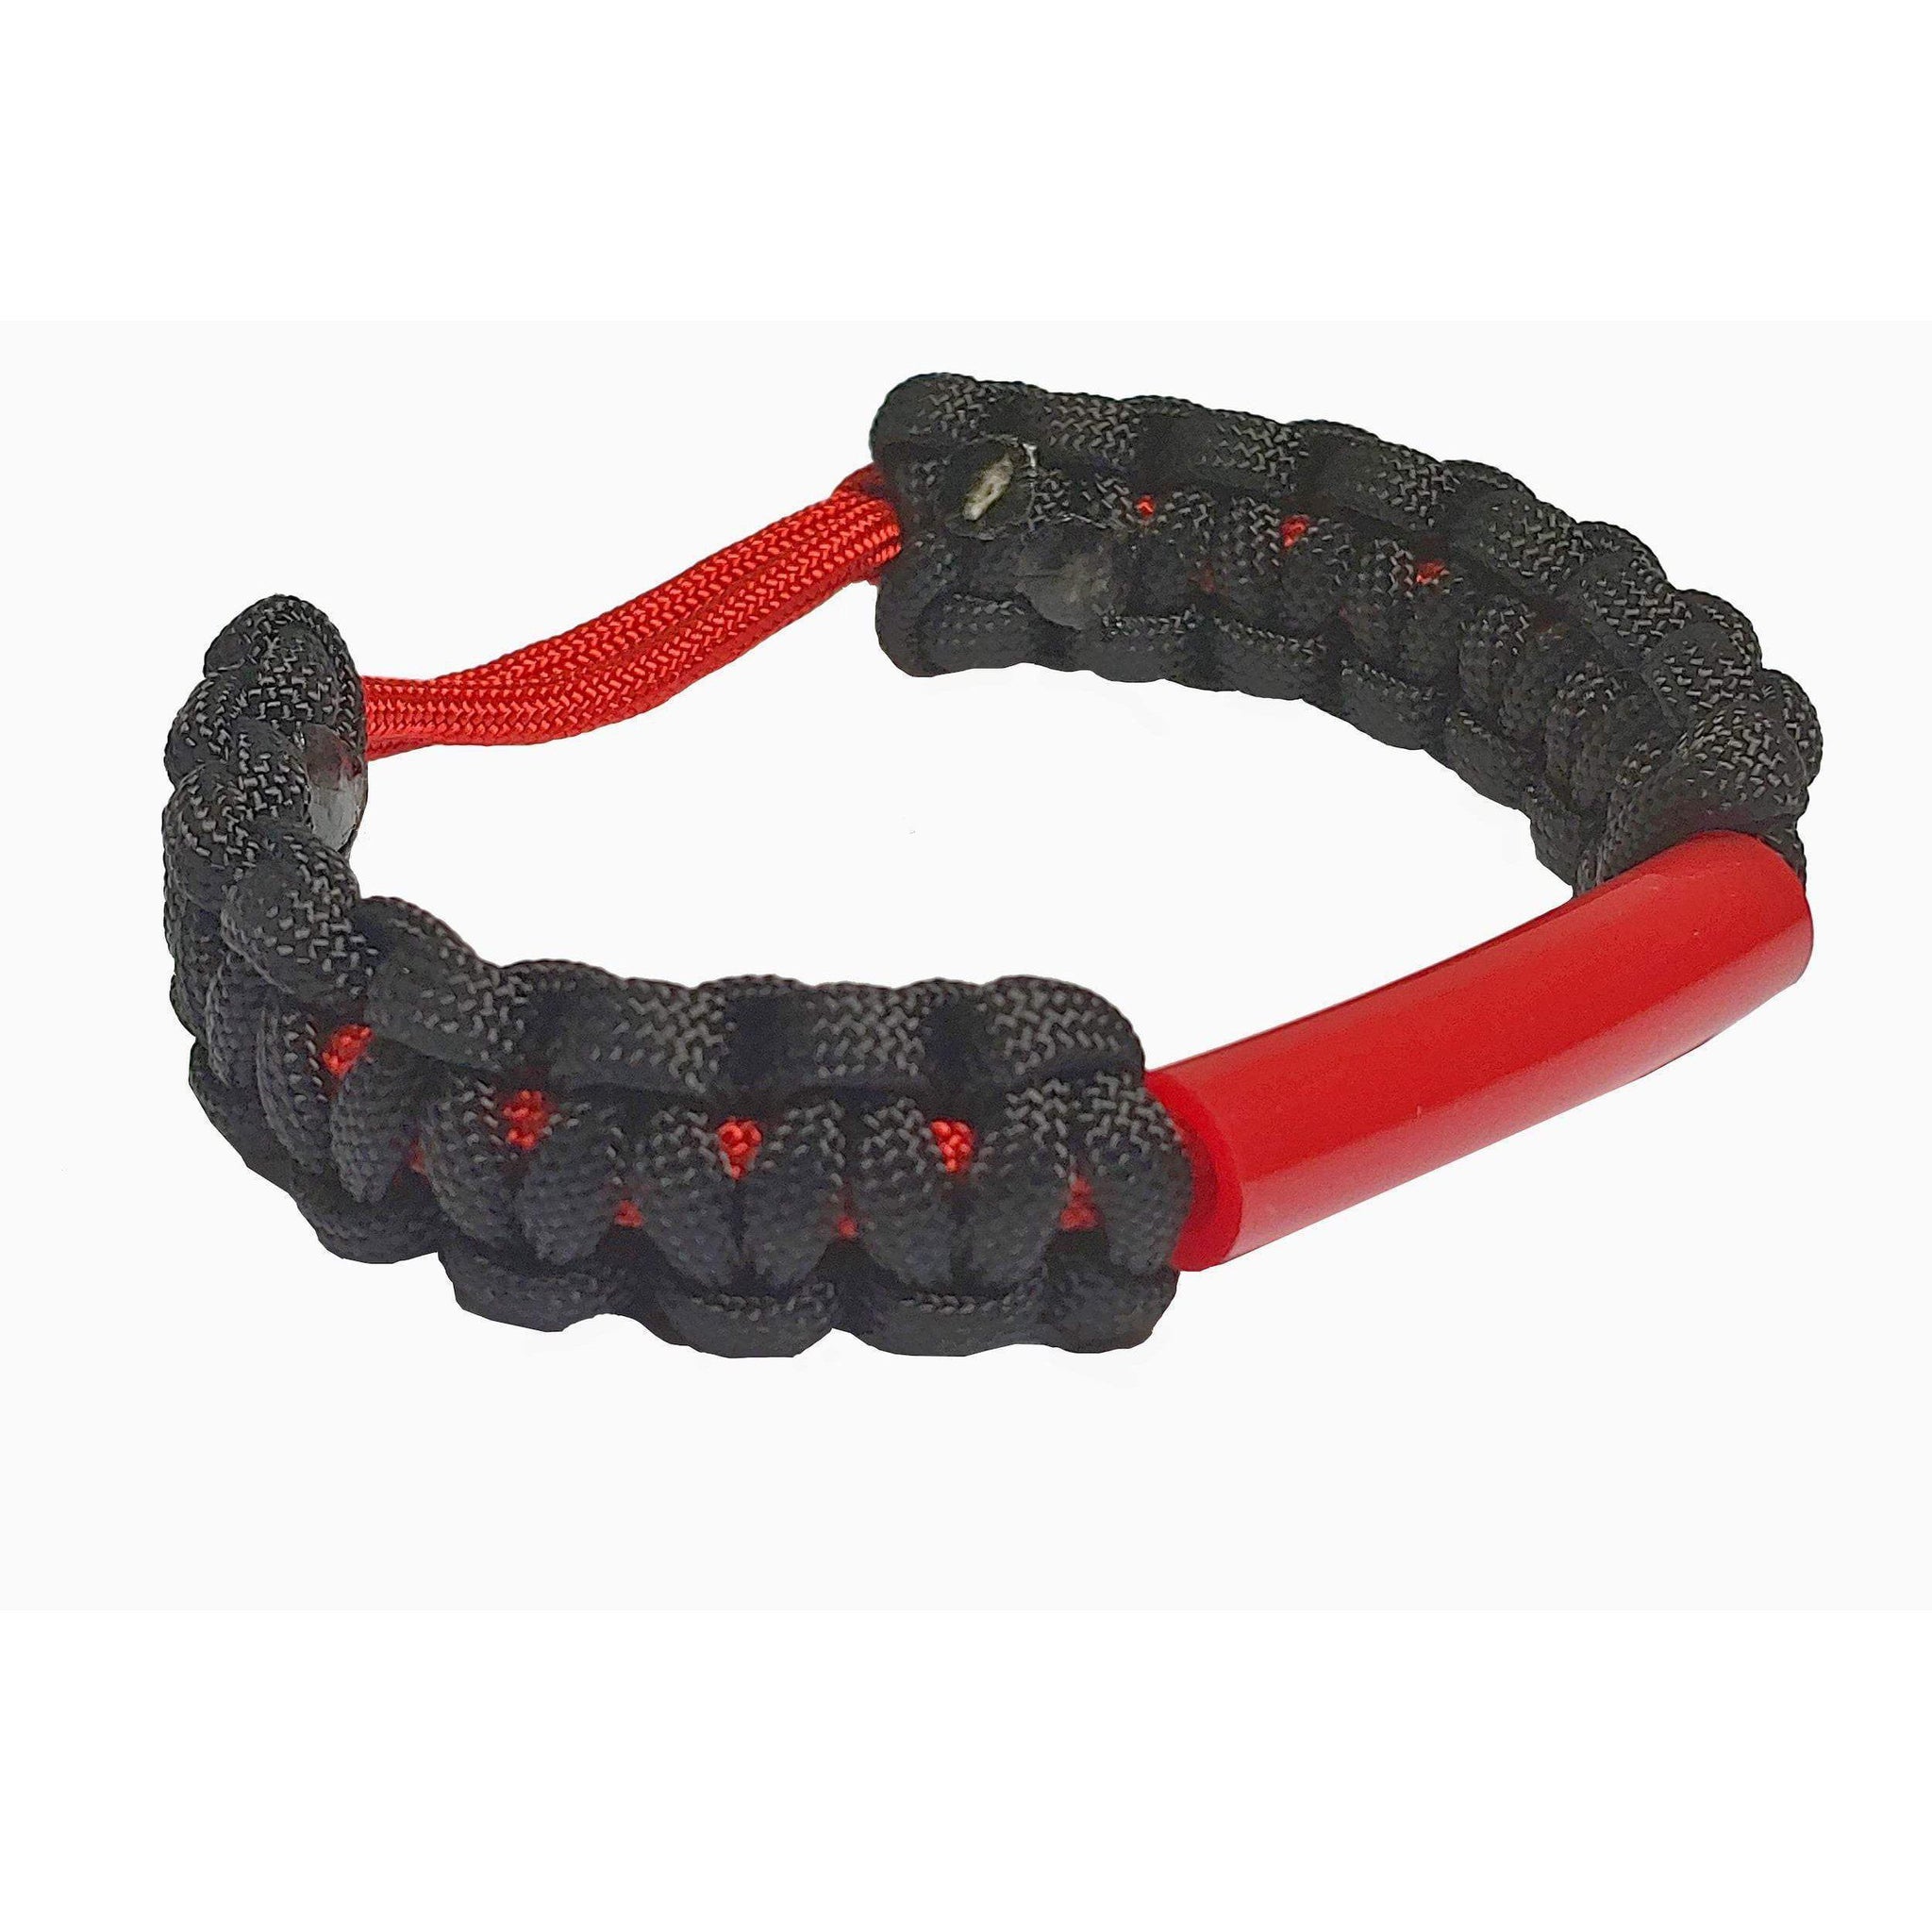 Parachewer Bracelet Red, non-toxic, ballistic nylon bracelet with Slim Strong Tube- IMPORTANT: Pick correct size using the sizing chart- PARACHWR-RED Bracelets Chubuddy 